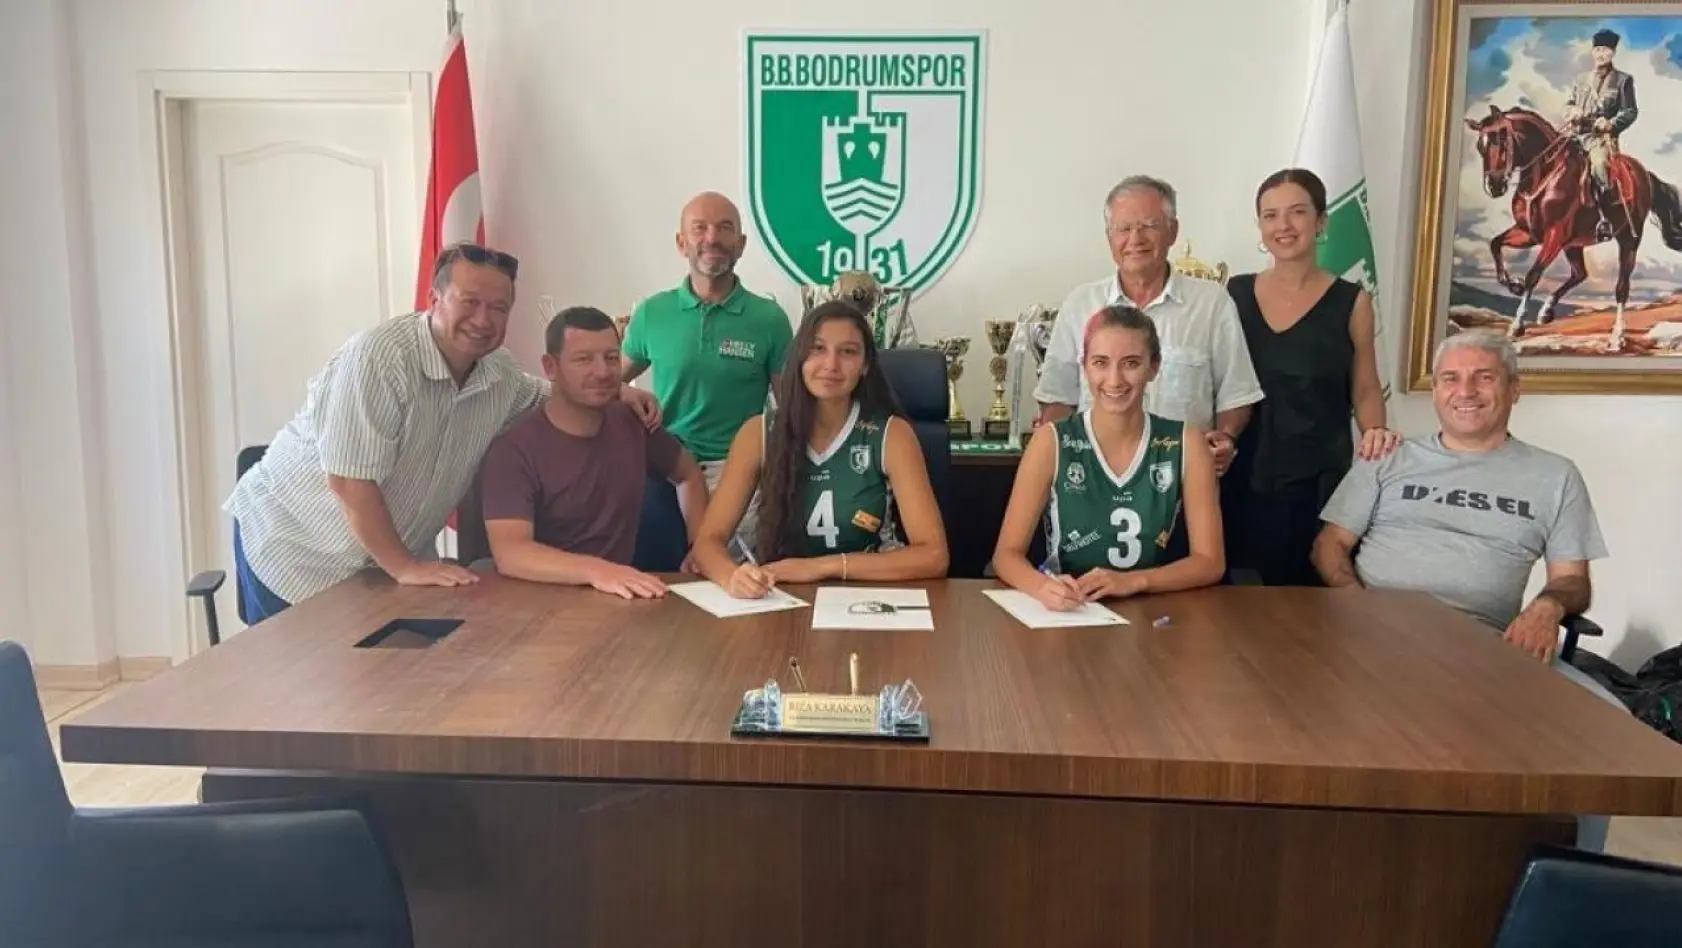 Bodrumspor iki yeni oyuncuyla sözleşme imzaladı